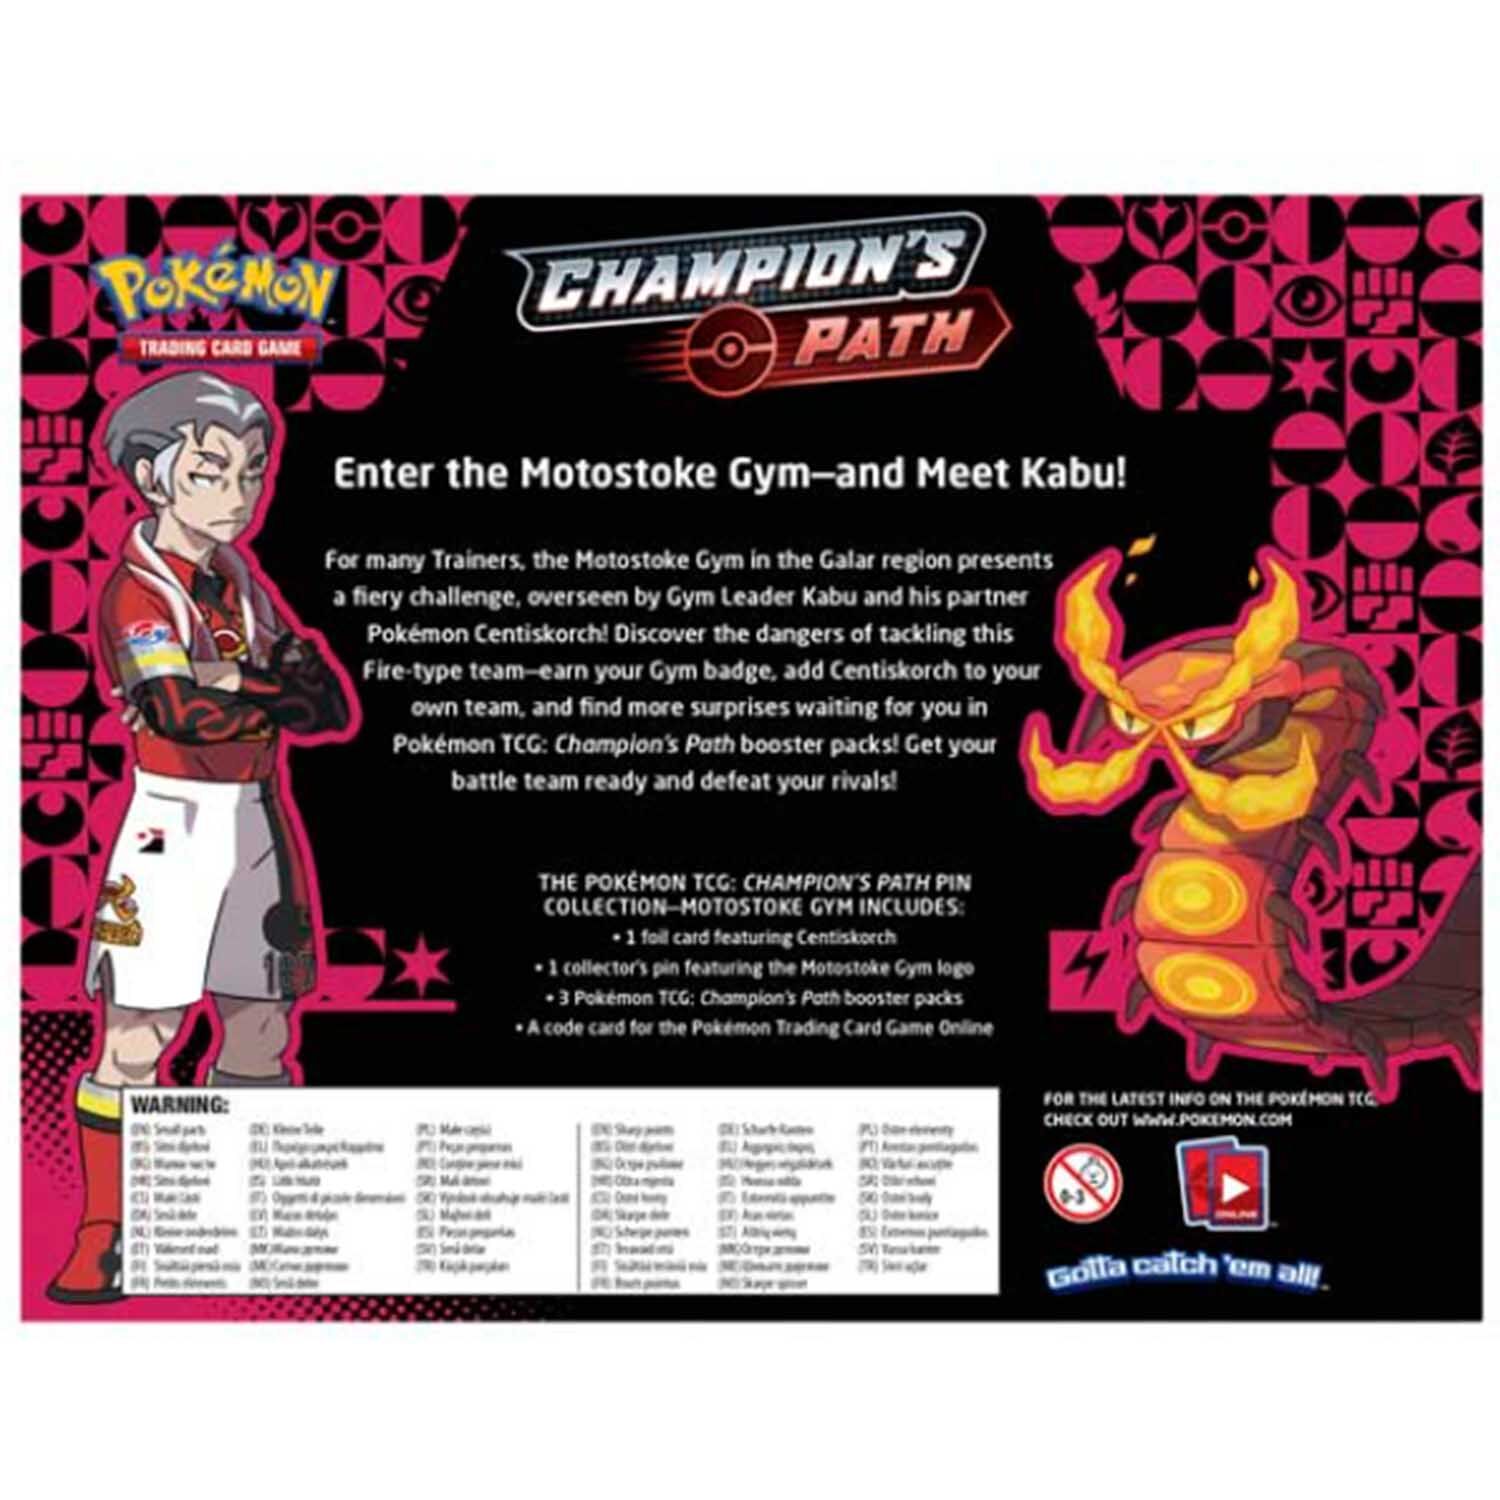 Pokémon Champion's Path Pin Collection Motostoke Gym - EN